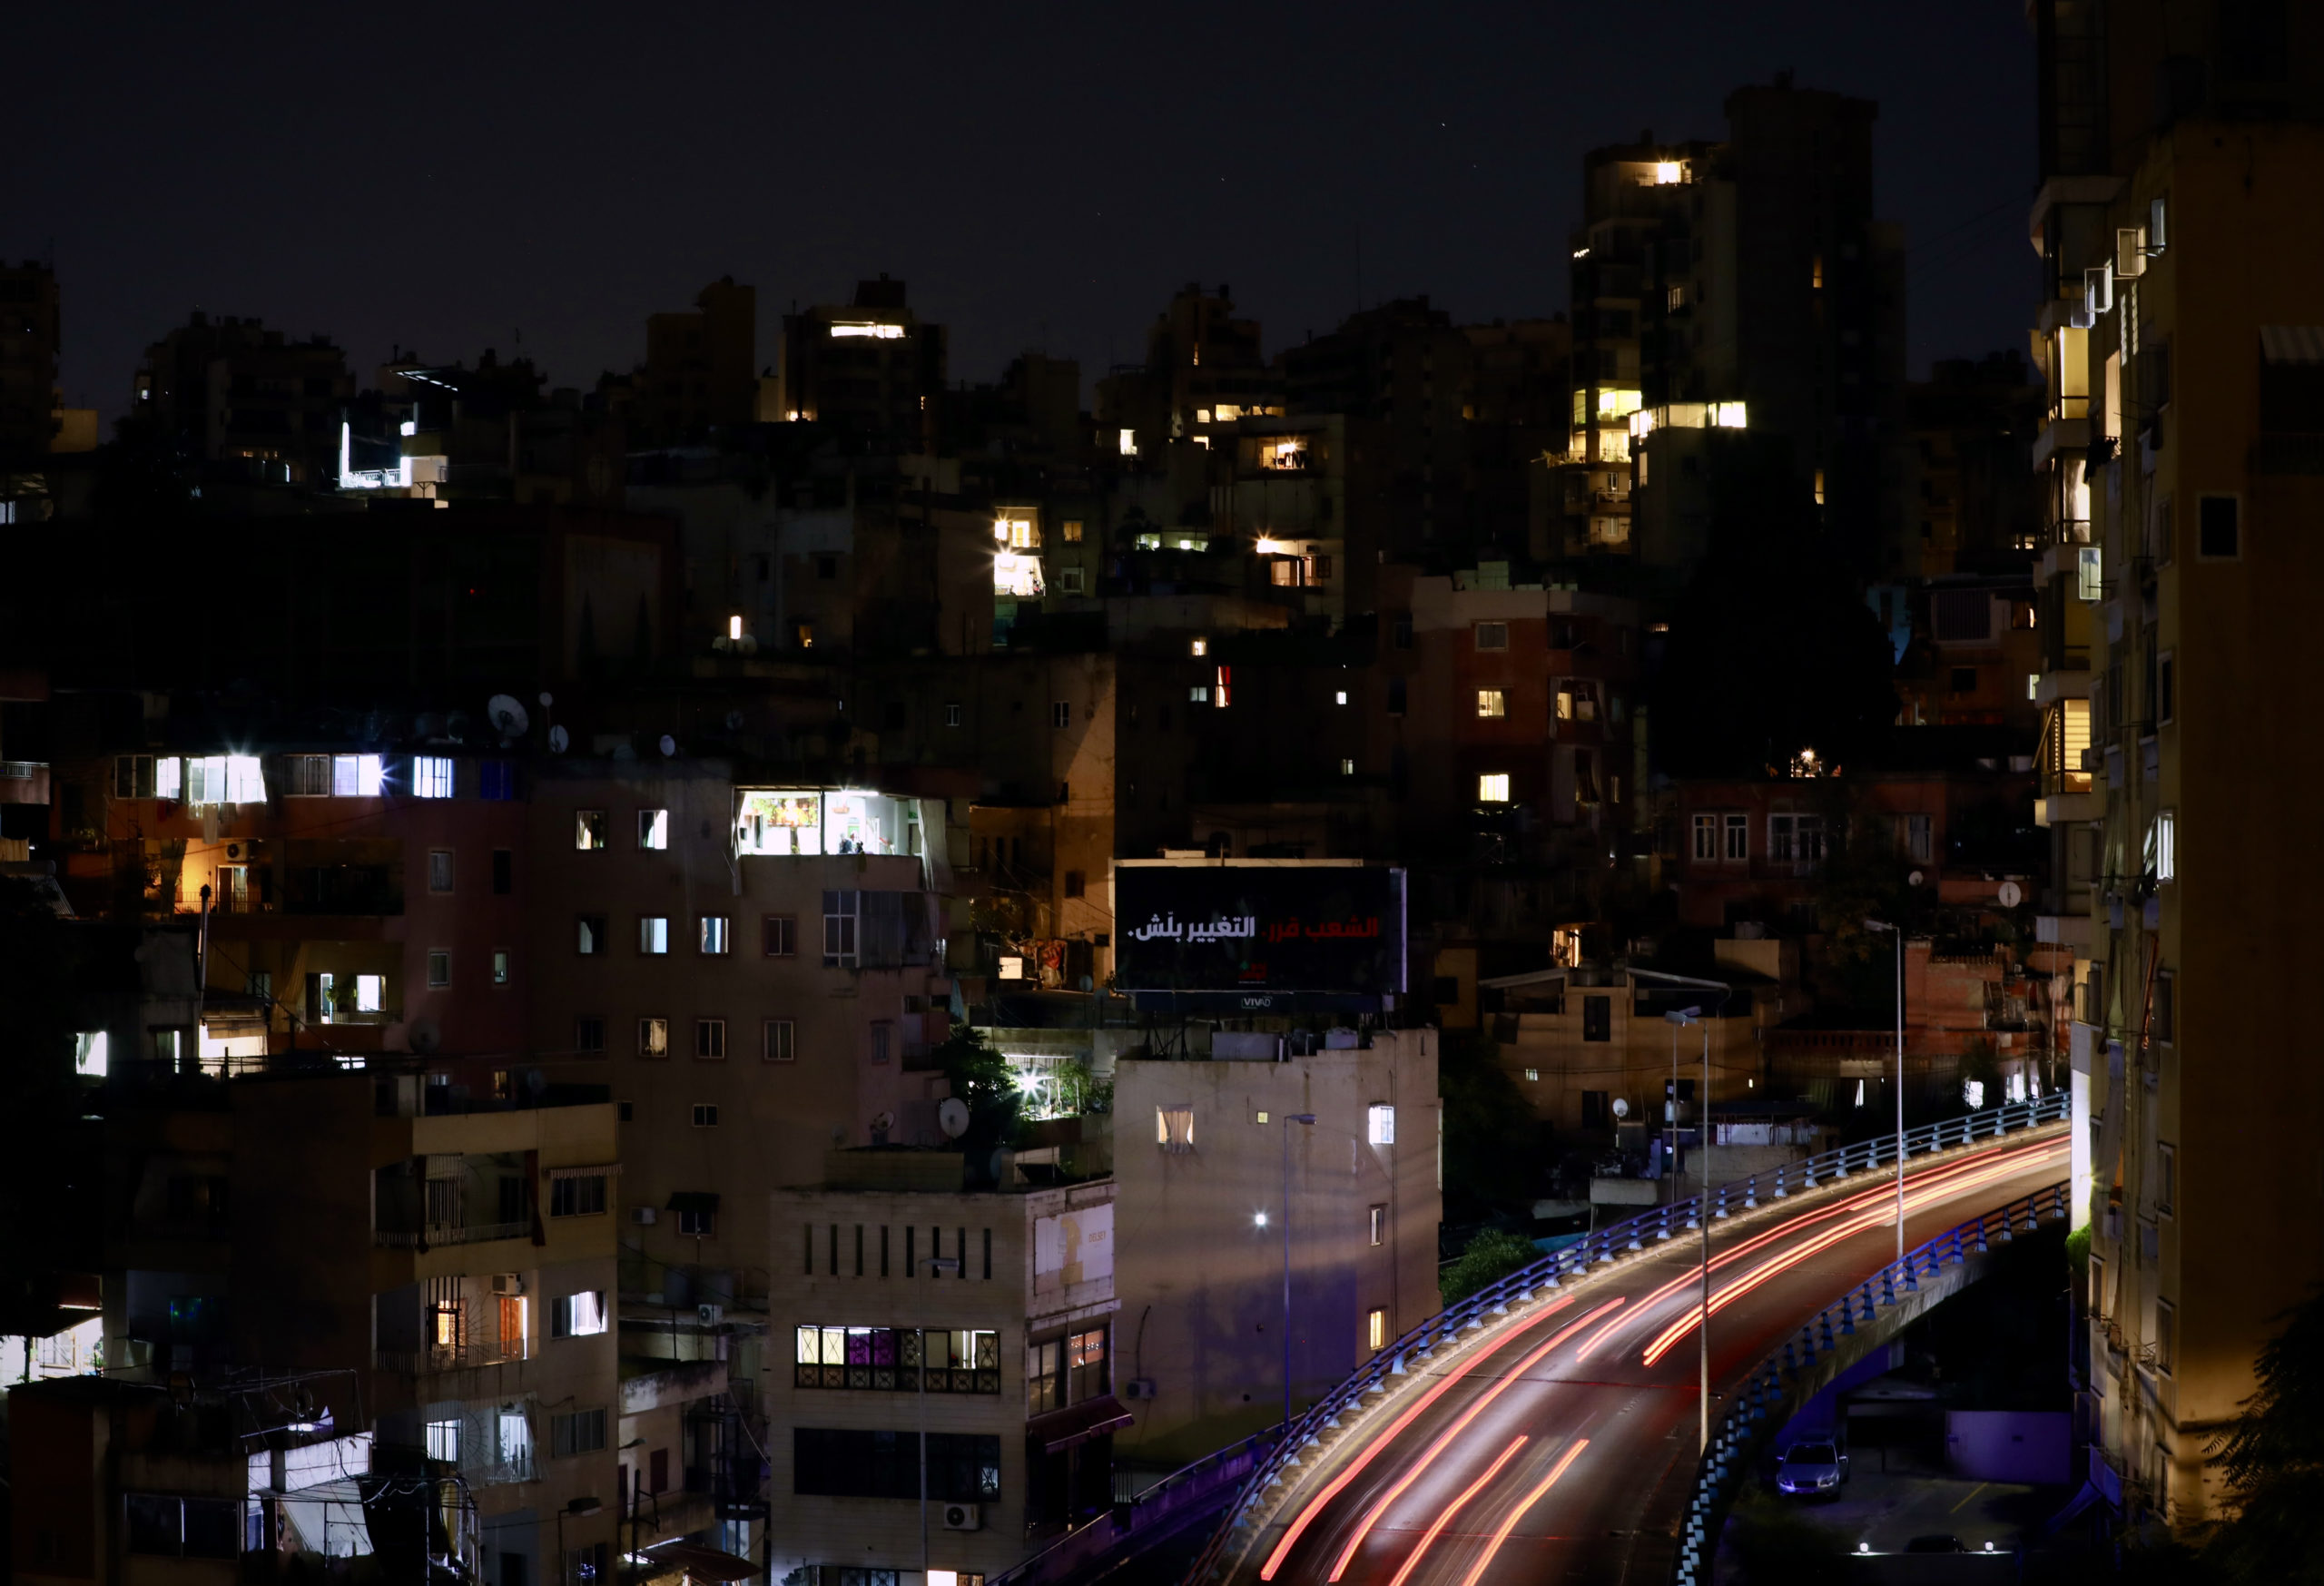 “Une intense métamorphose” par Matthieu Karam à Beyrouth